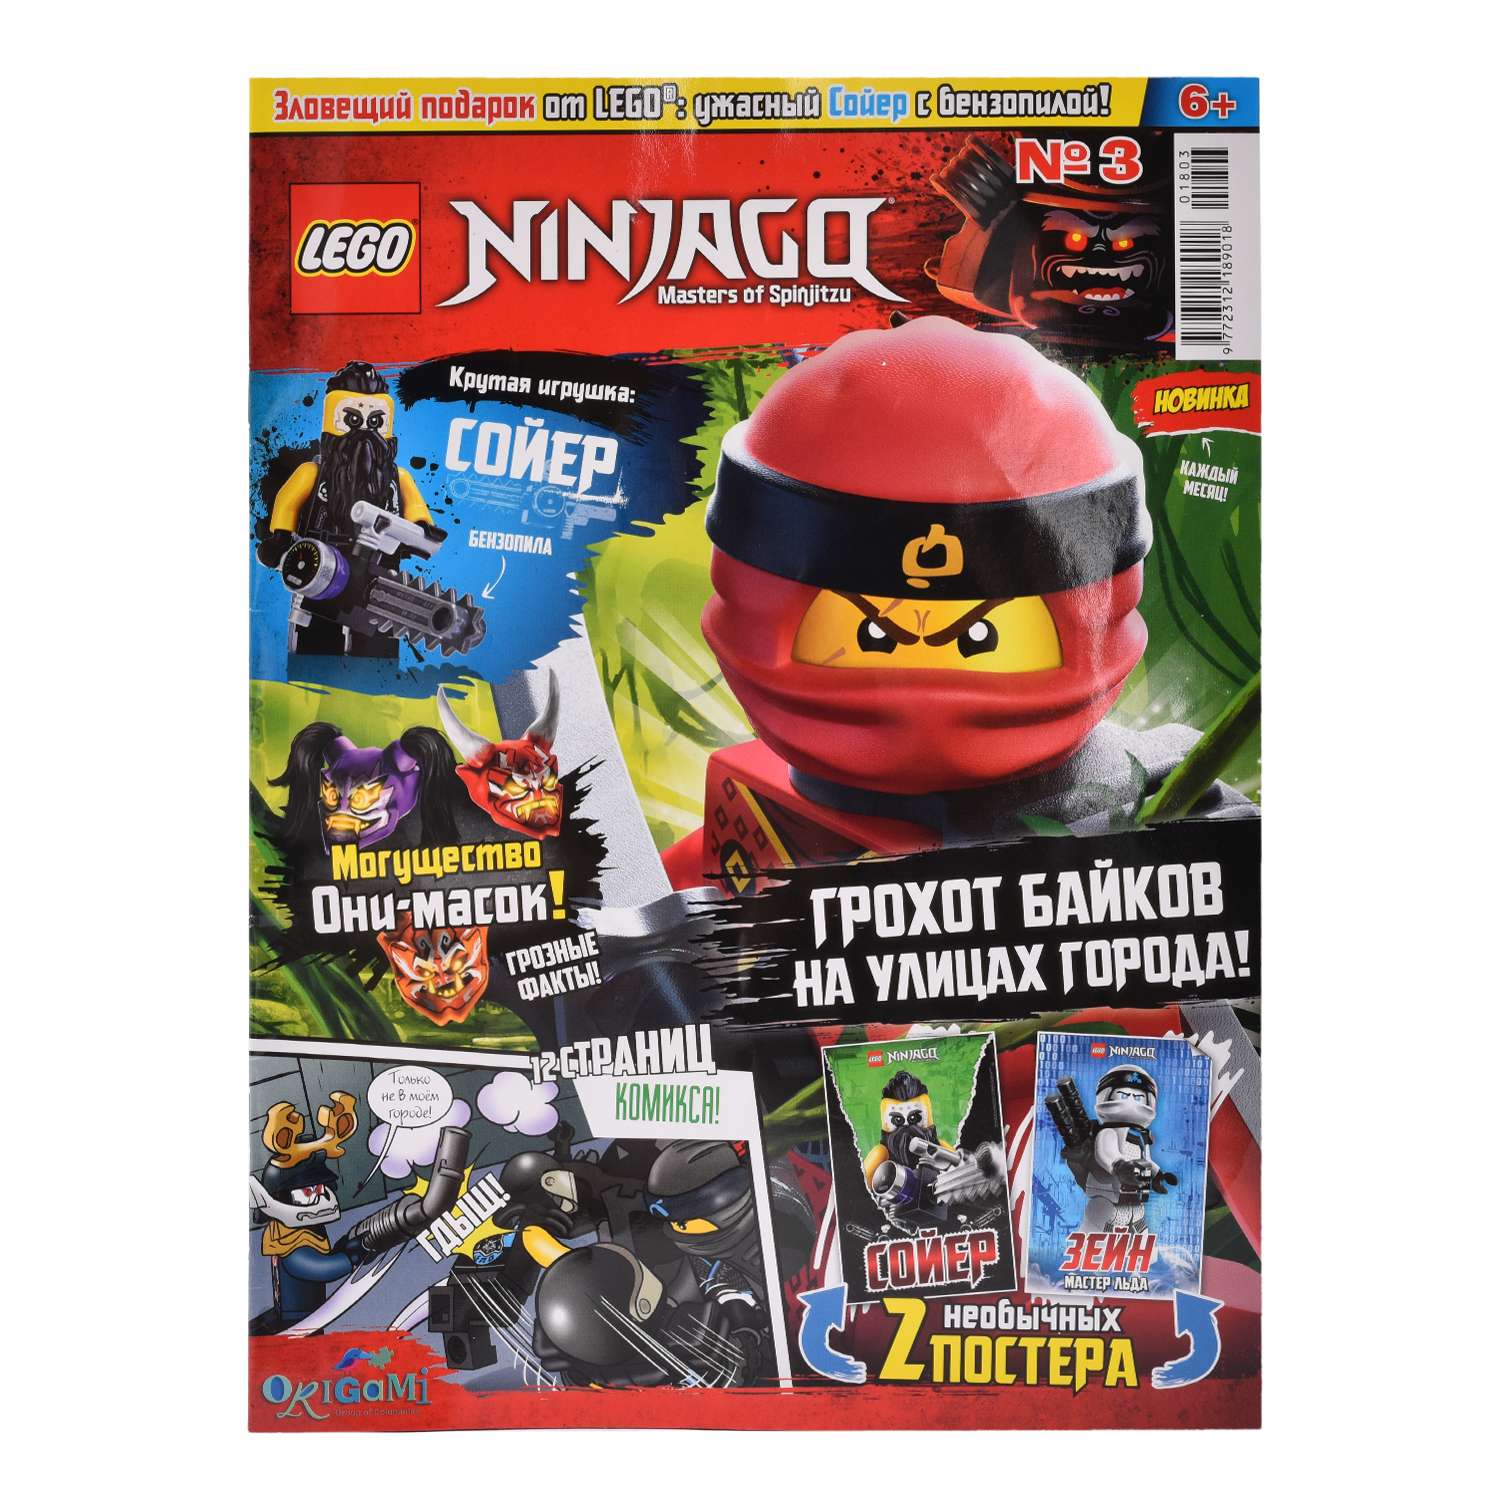 Журнал LEGO Ninjago 2 по цене 1 в ассортименте - фото 4